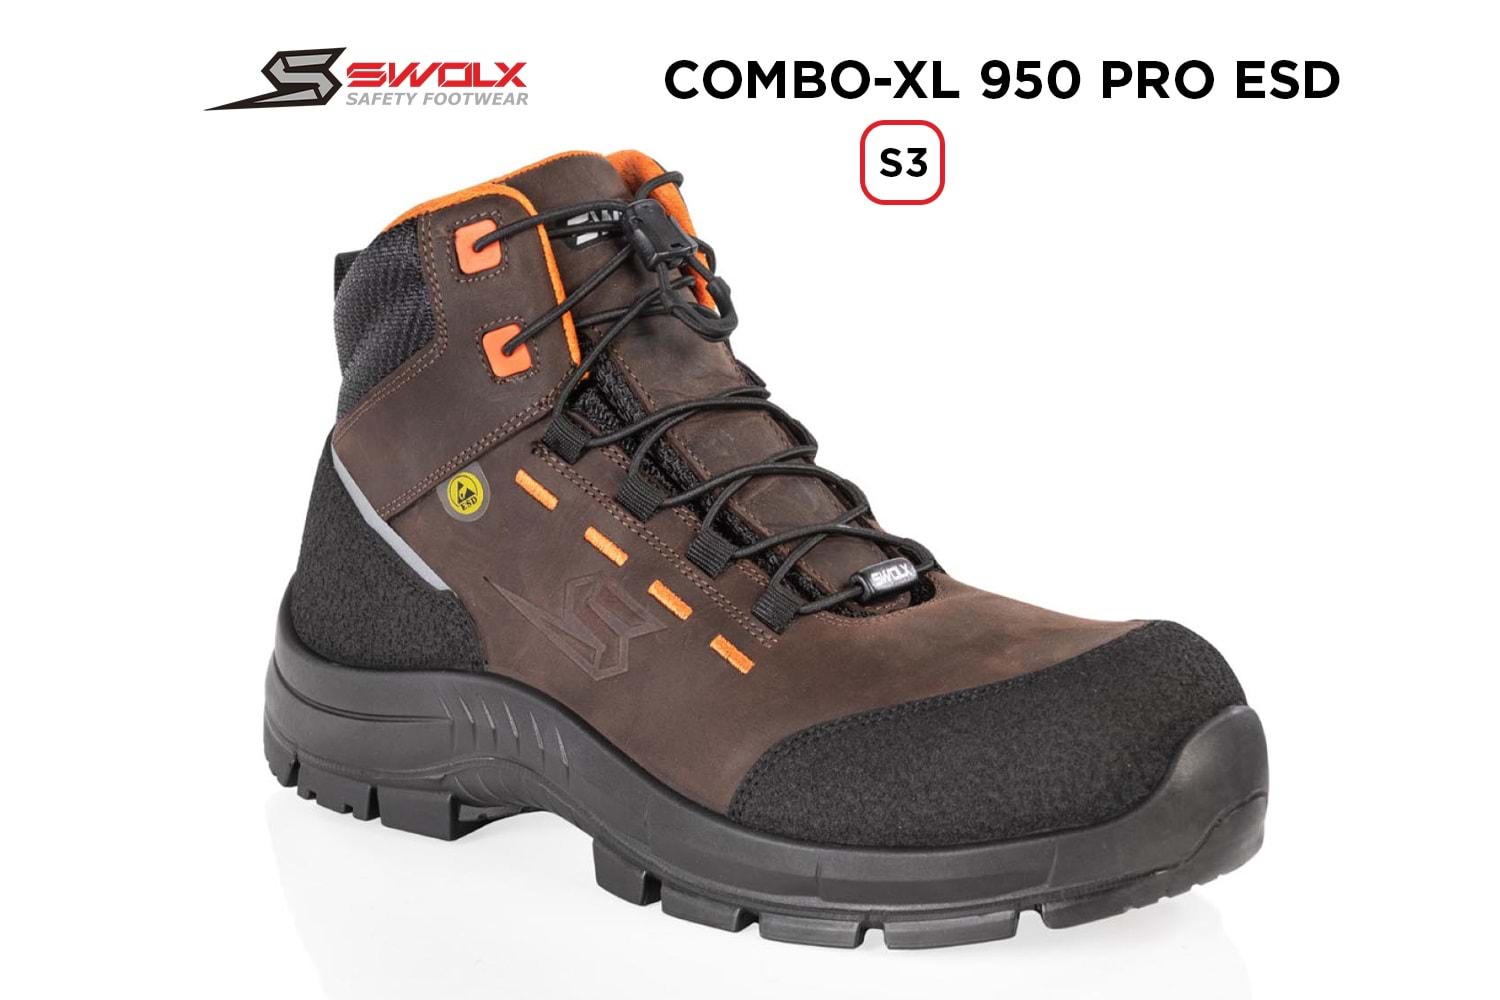 Swolx İş Ayakkabısı - Combo-Xl Pro Esd 950 S3 - 43